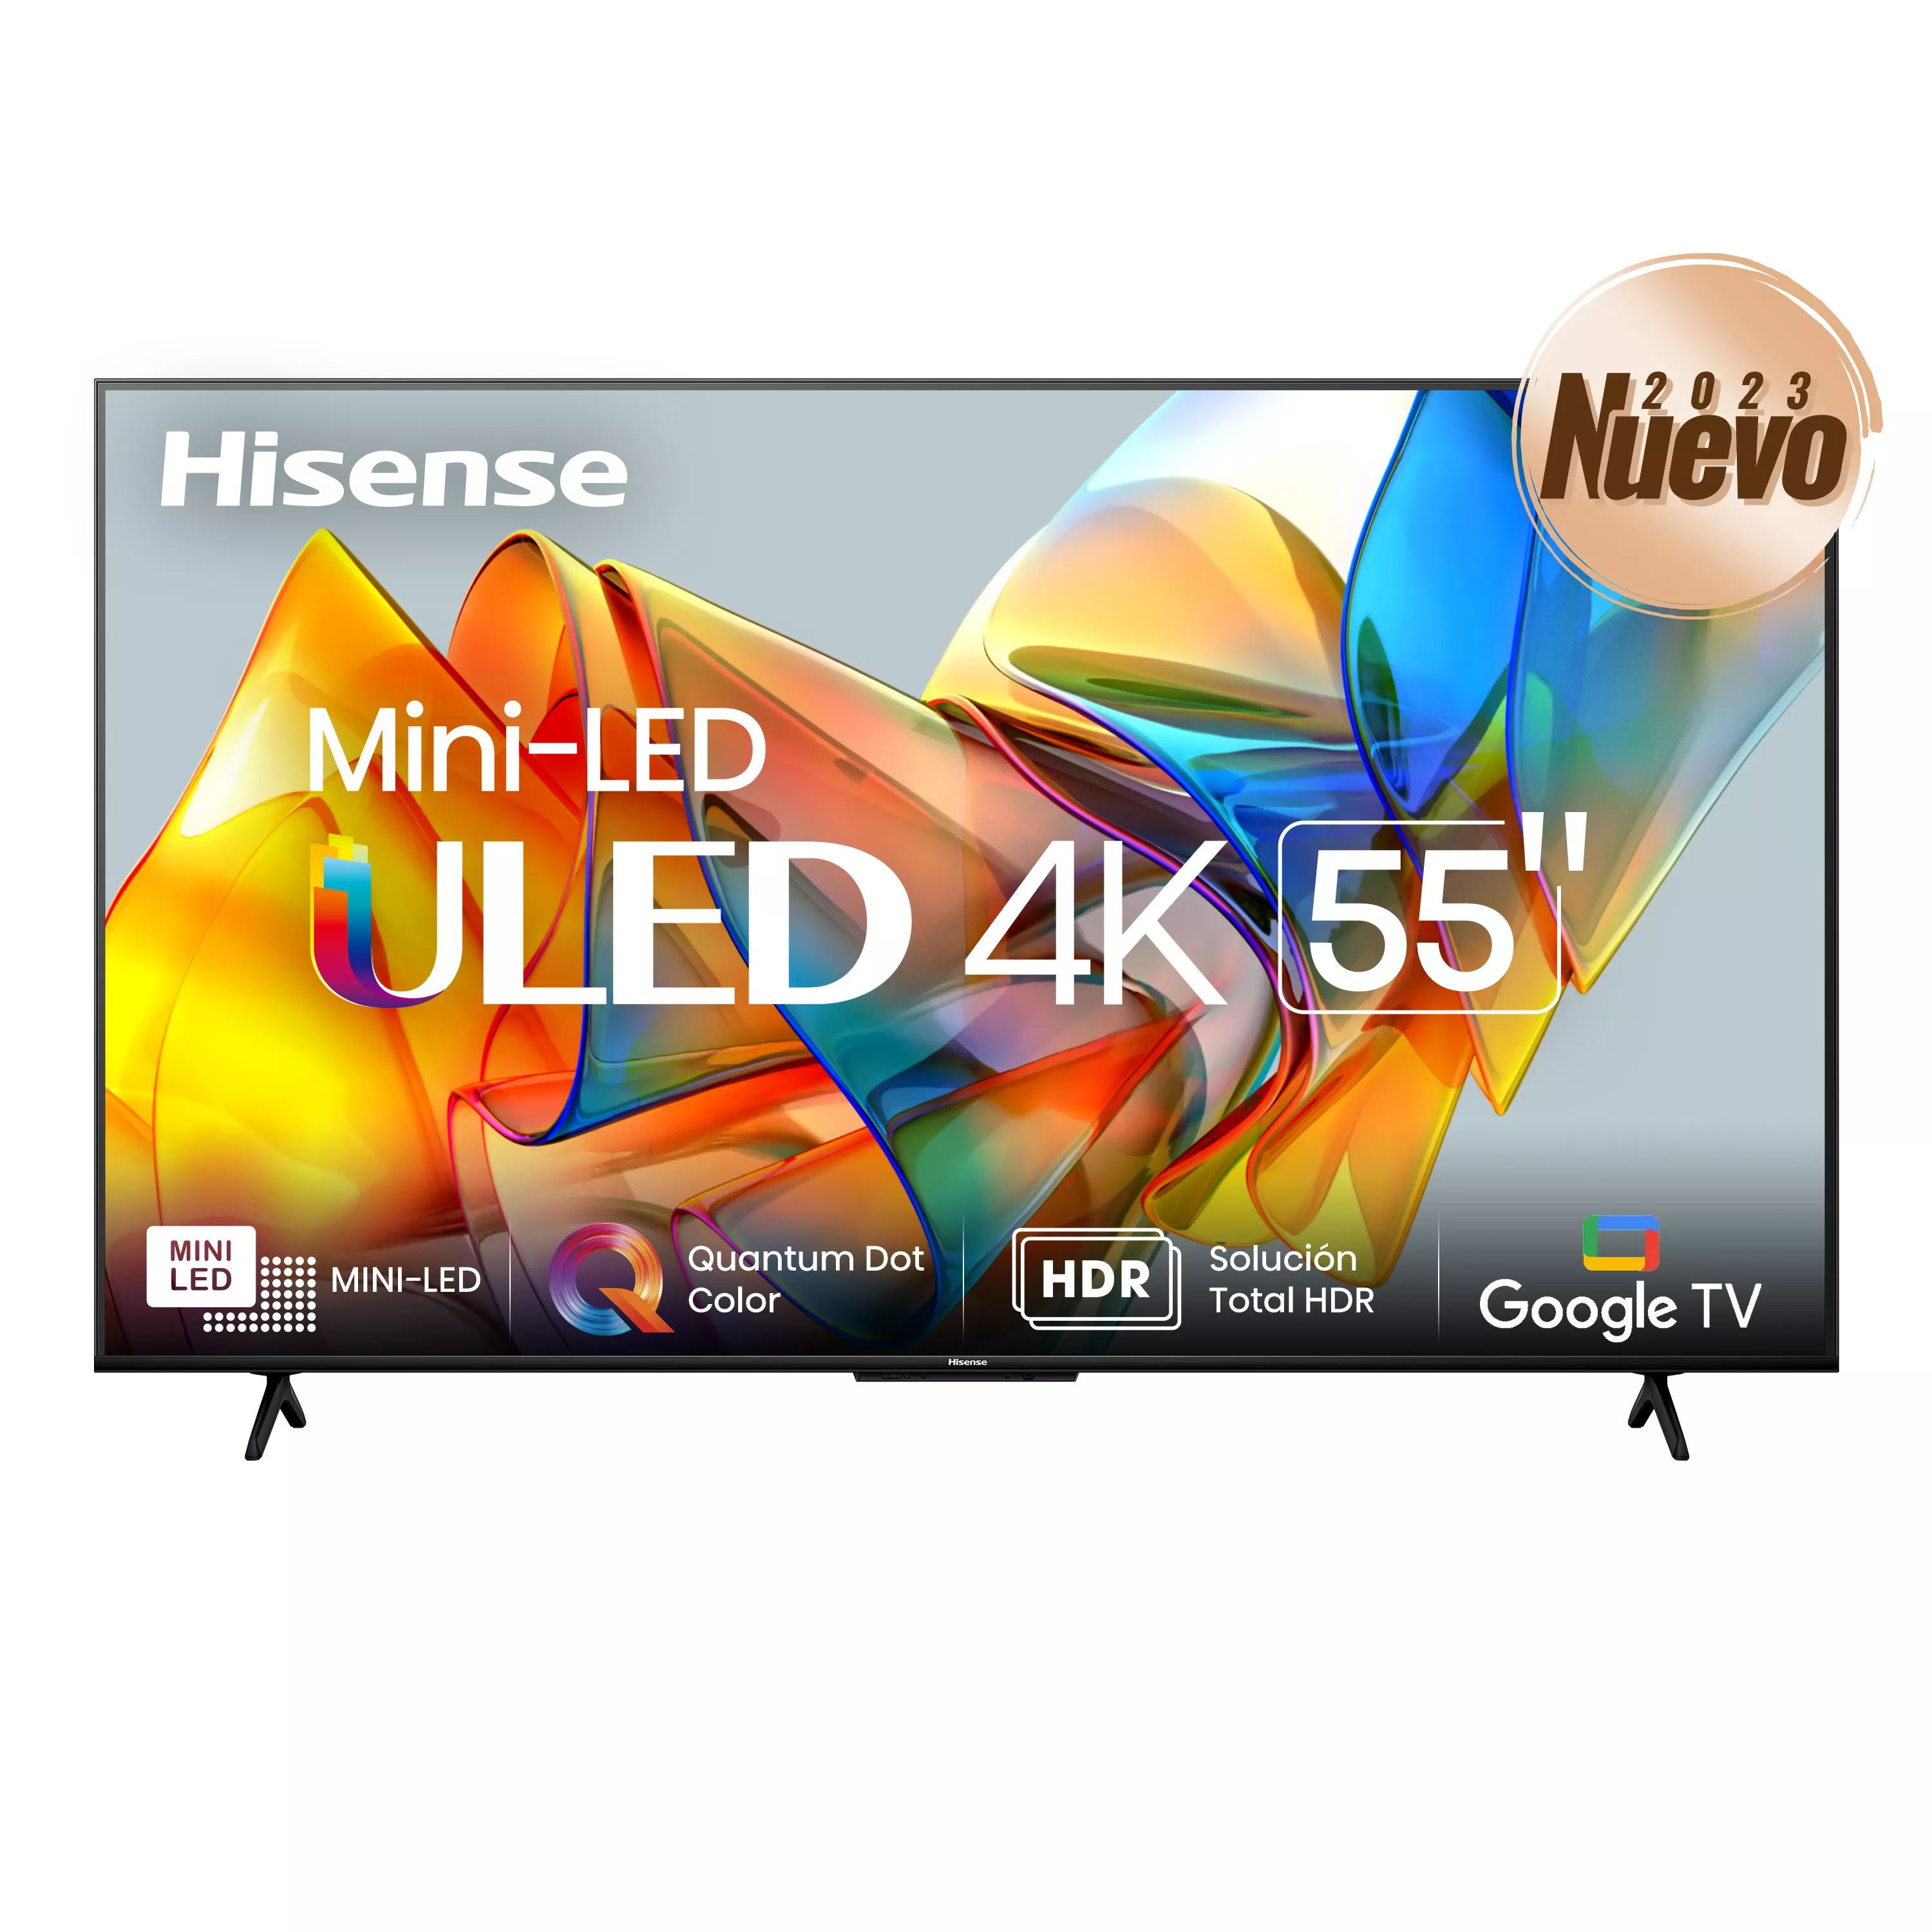 Mini LED U6K